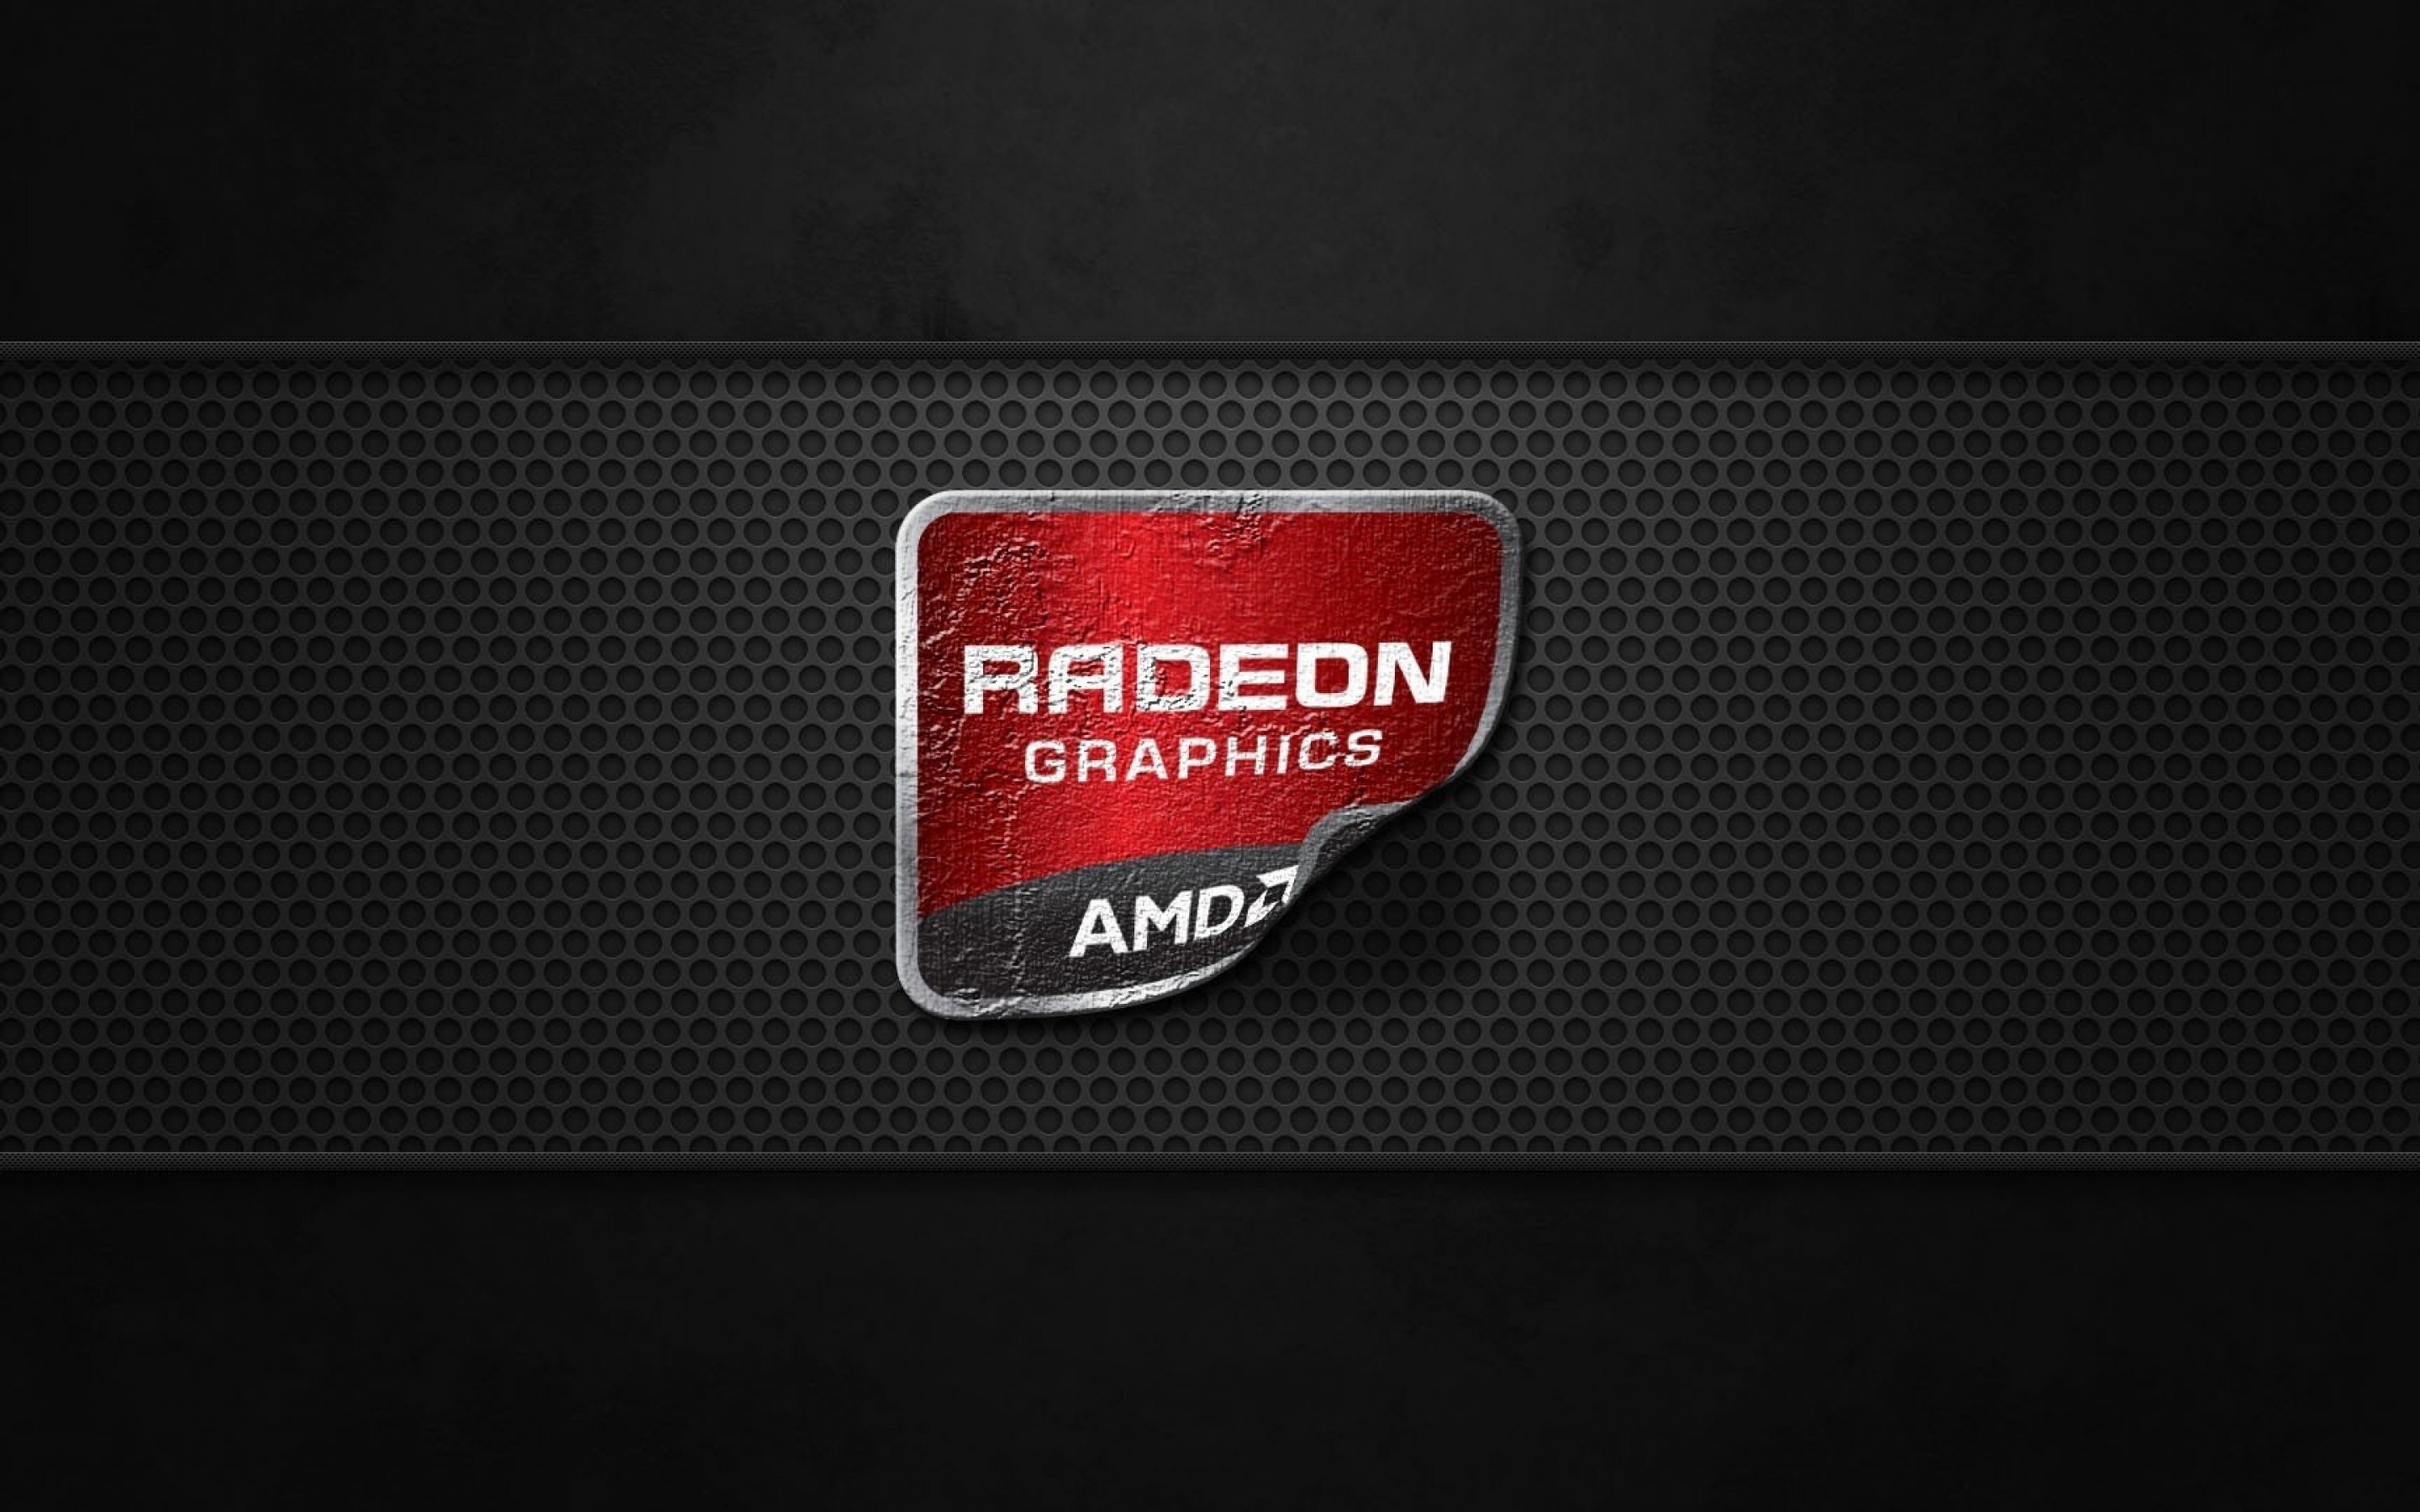 AMD Radeon Graphics Wallpaper for Desktop 2880x1800